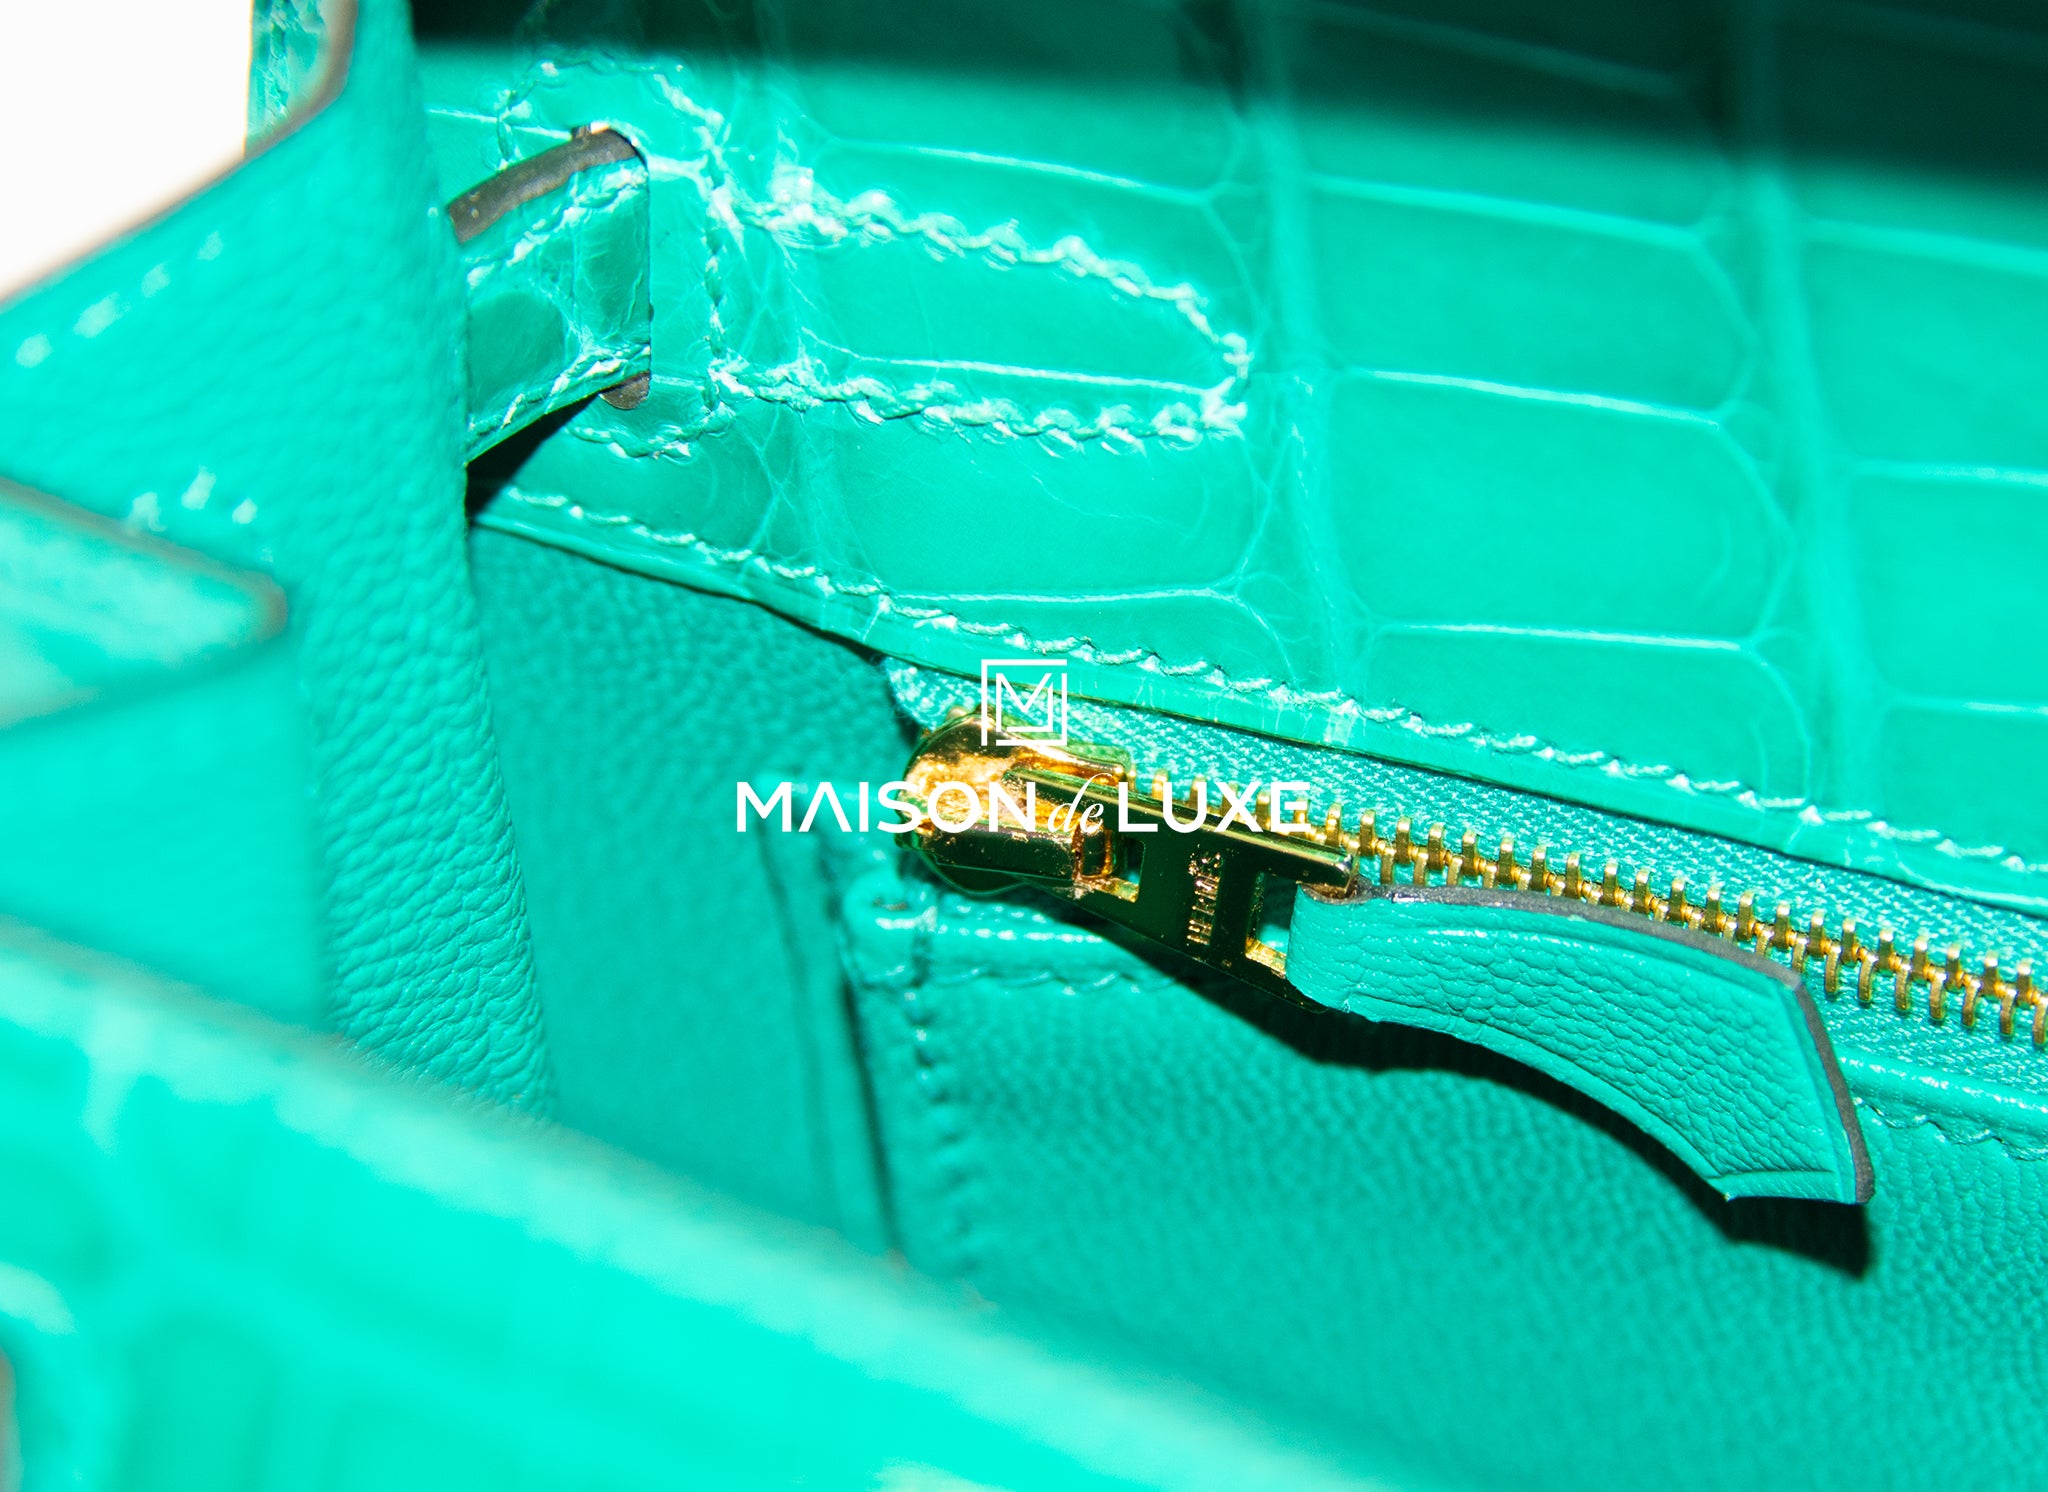 Hermes Kelly Sellier 20 Vert Jade Shiny Alligator Gold Hardware